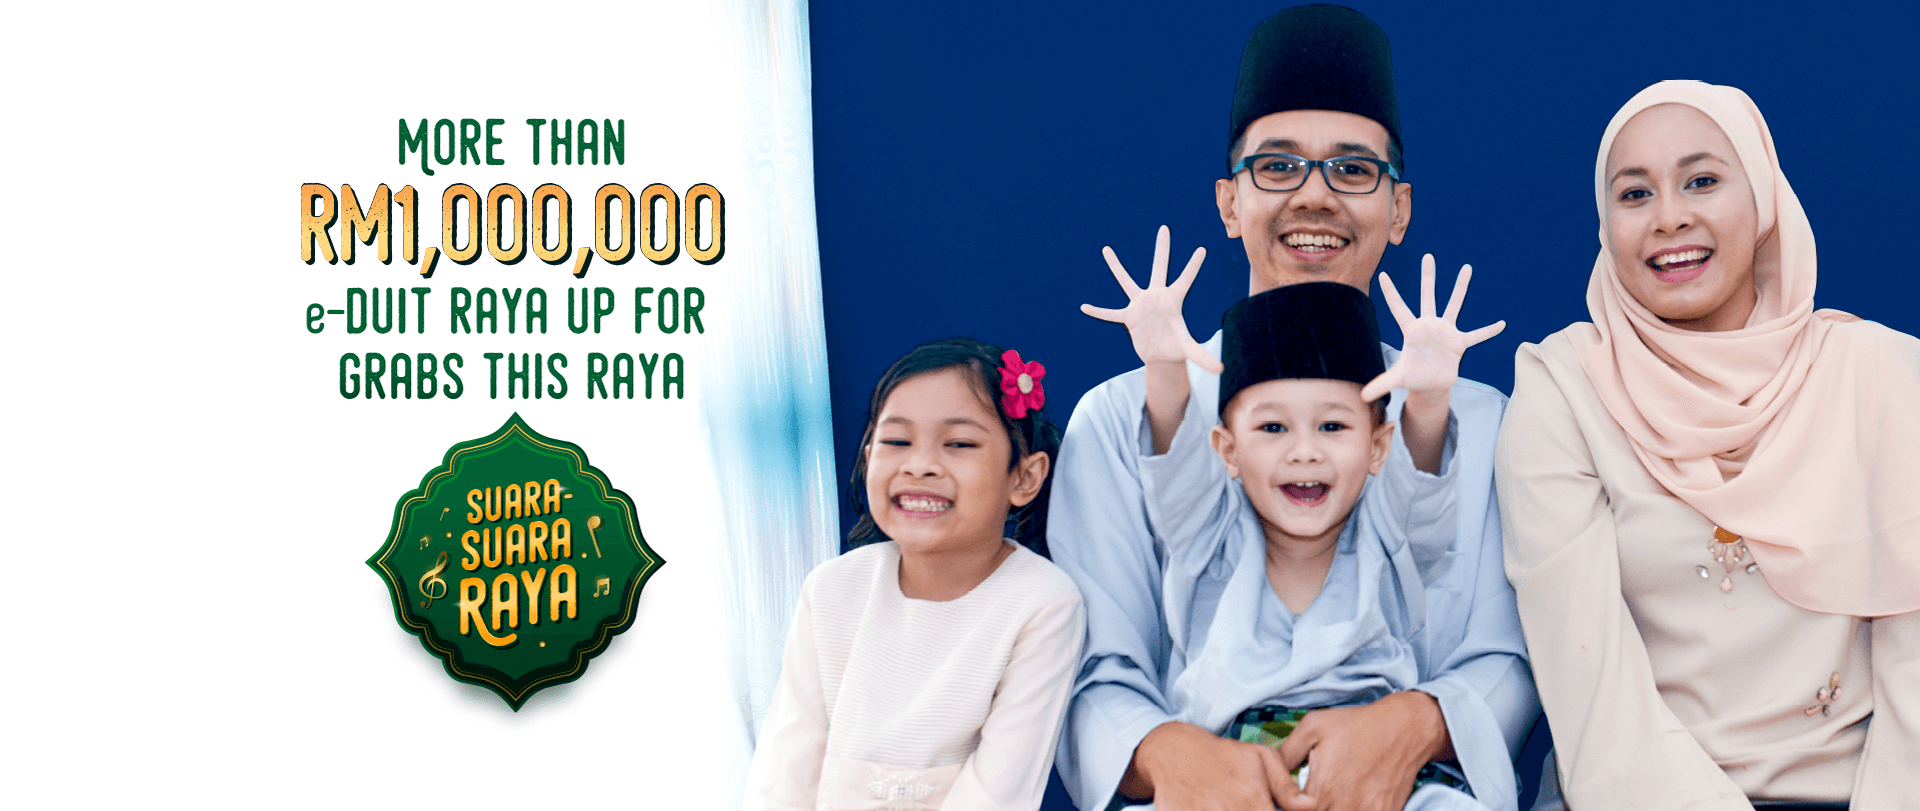 MORE THAN RM1,000,000 e-DUIT RAYA UP FOR GRABS THIS RAYA - SUARA SUARA RAYA